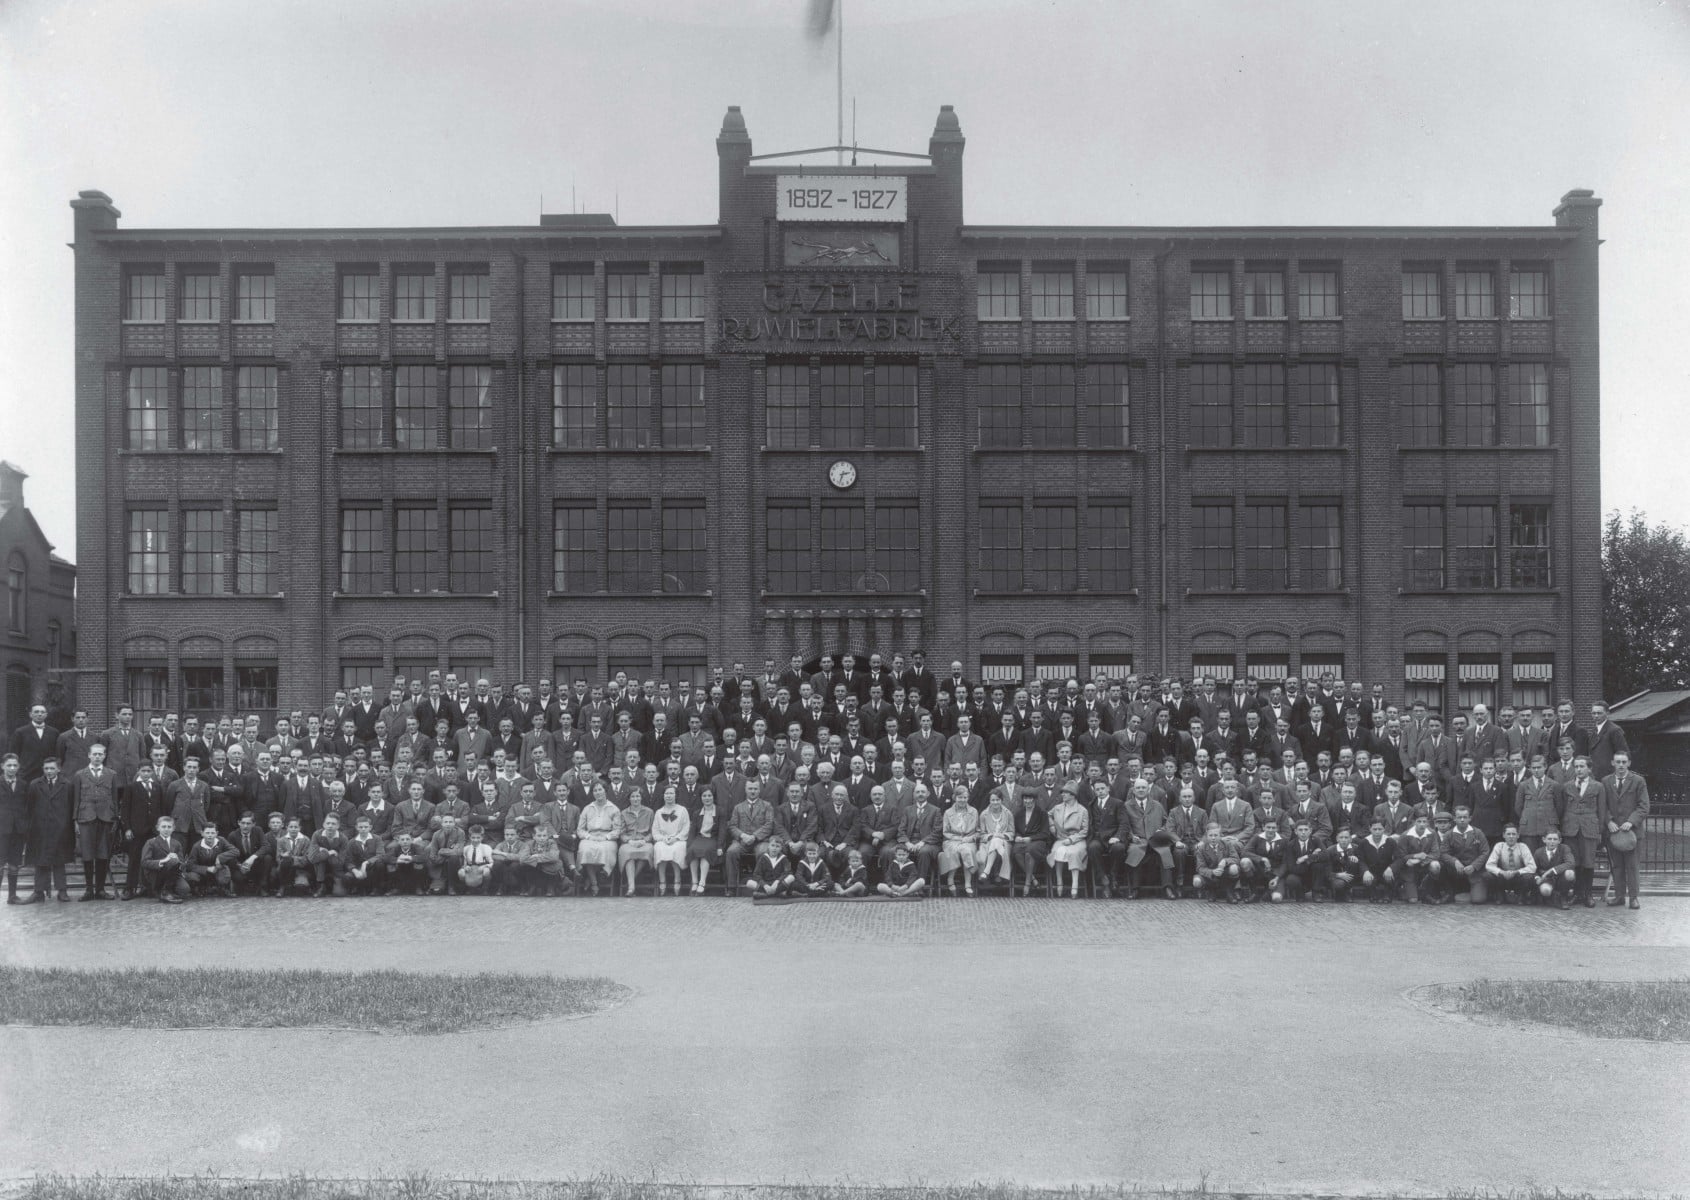 Gazelle fietsfabriek 1920